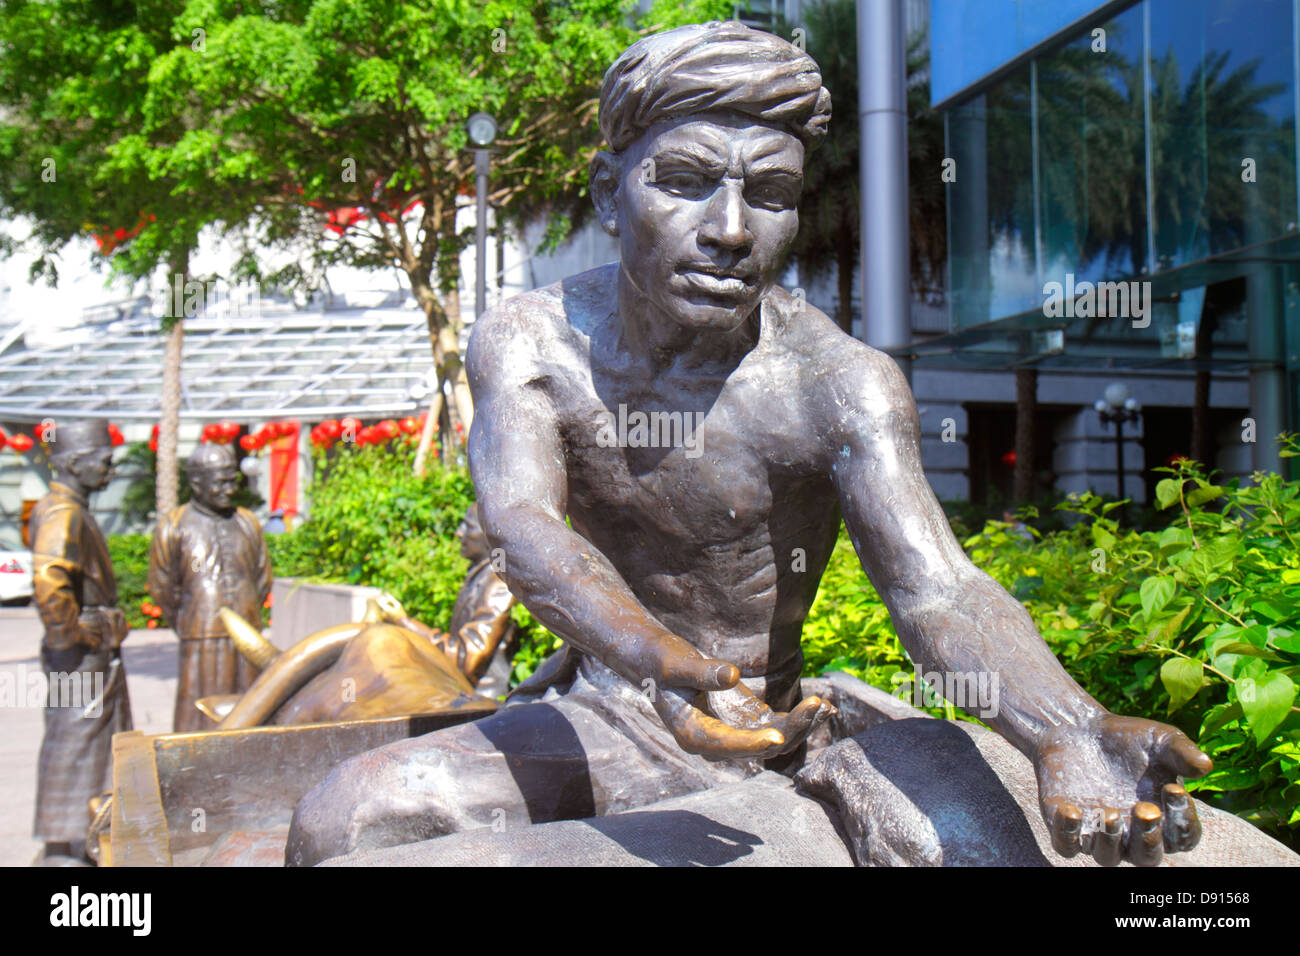 Río Singapur Singapur, muelle de barcos, talla natural, estatua de bronce, arte público, hombre asiático masculino, trabajador portuario, trabajadores,Sing130201159 Foto de stock